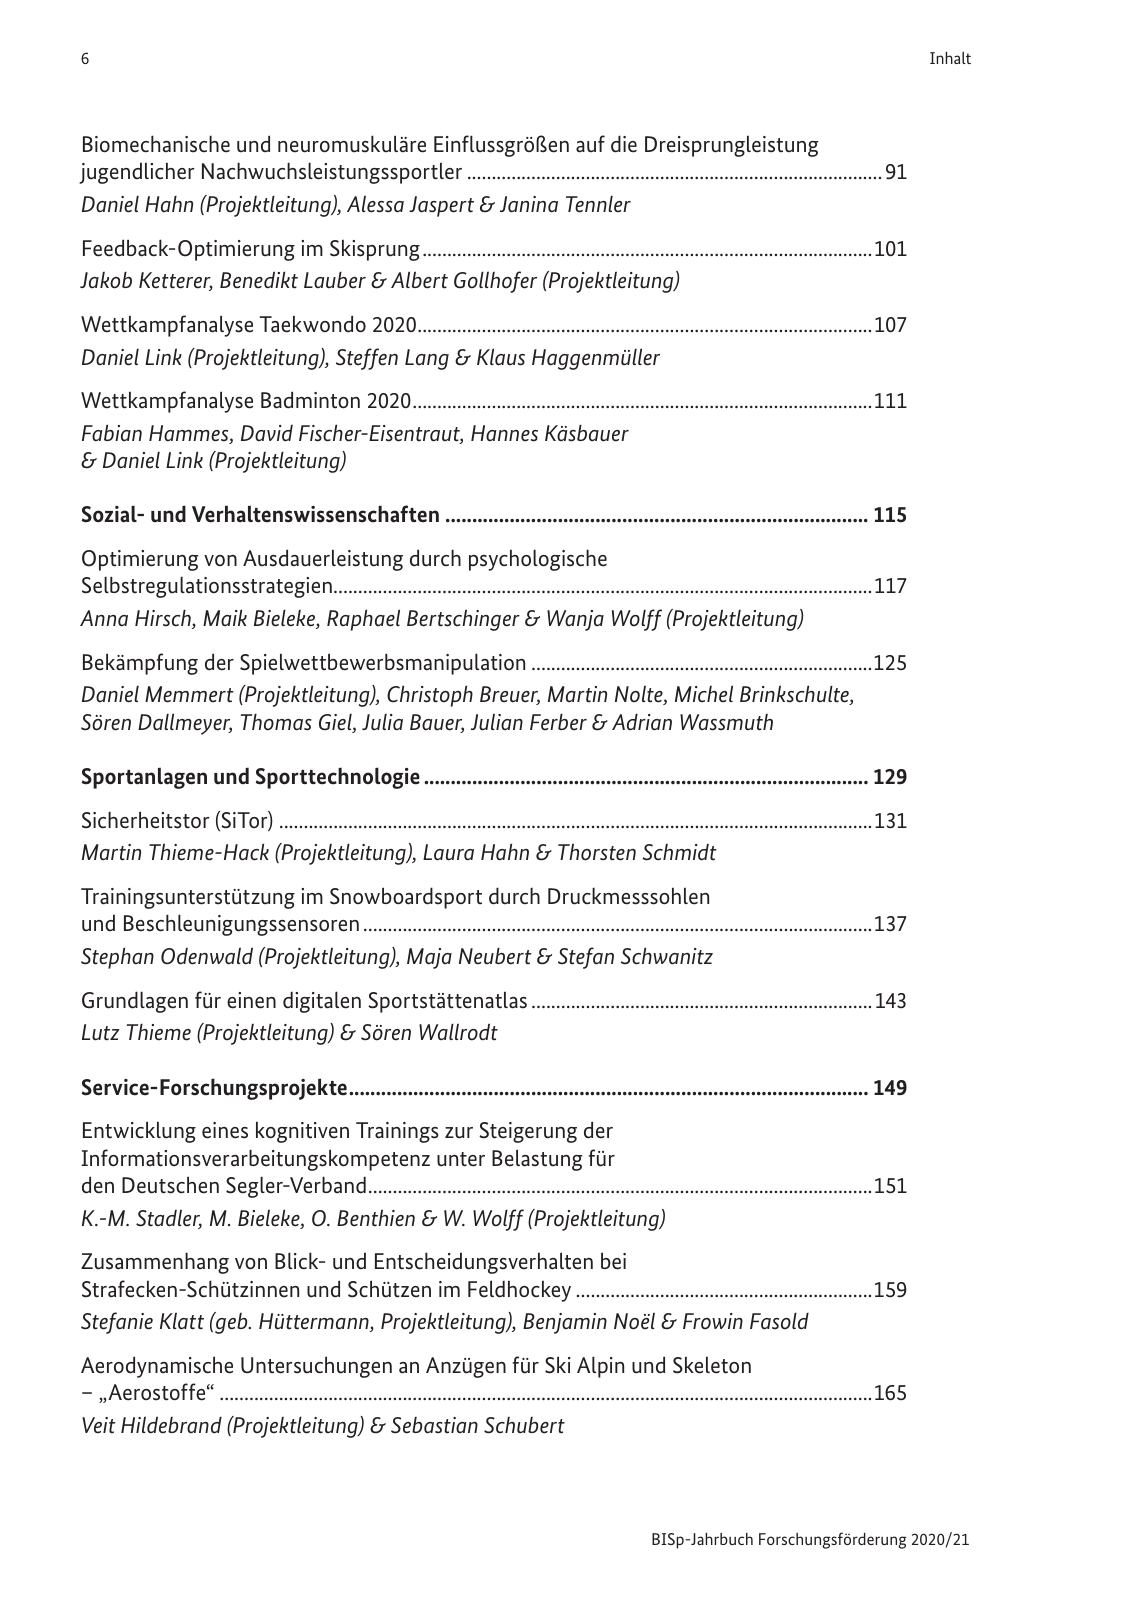 Vorschau BISp-Jahrbuch 2020/21 Seite 8